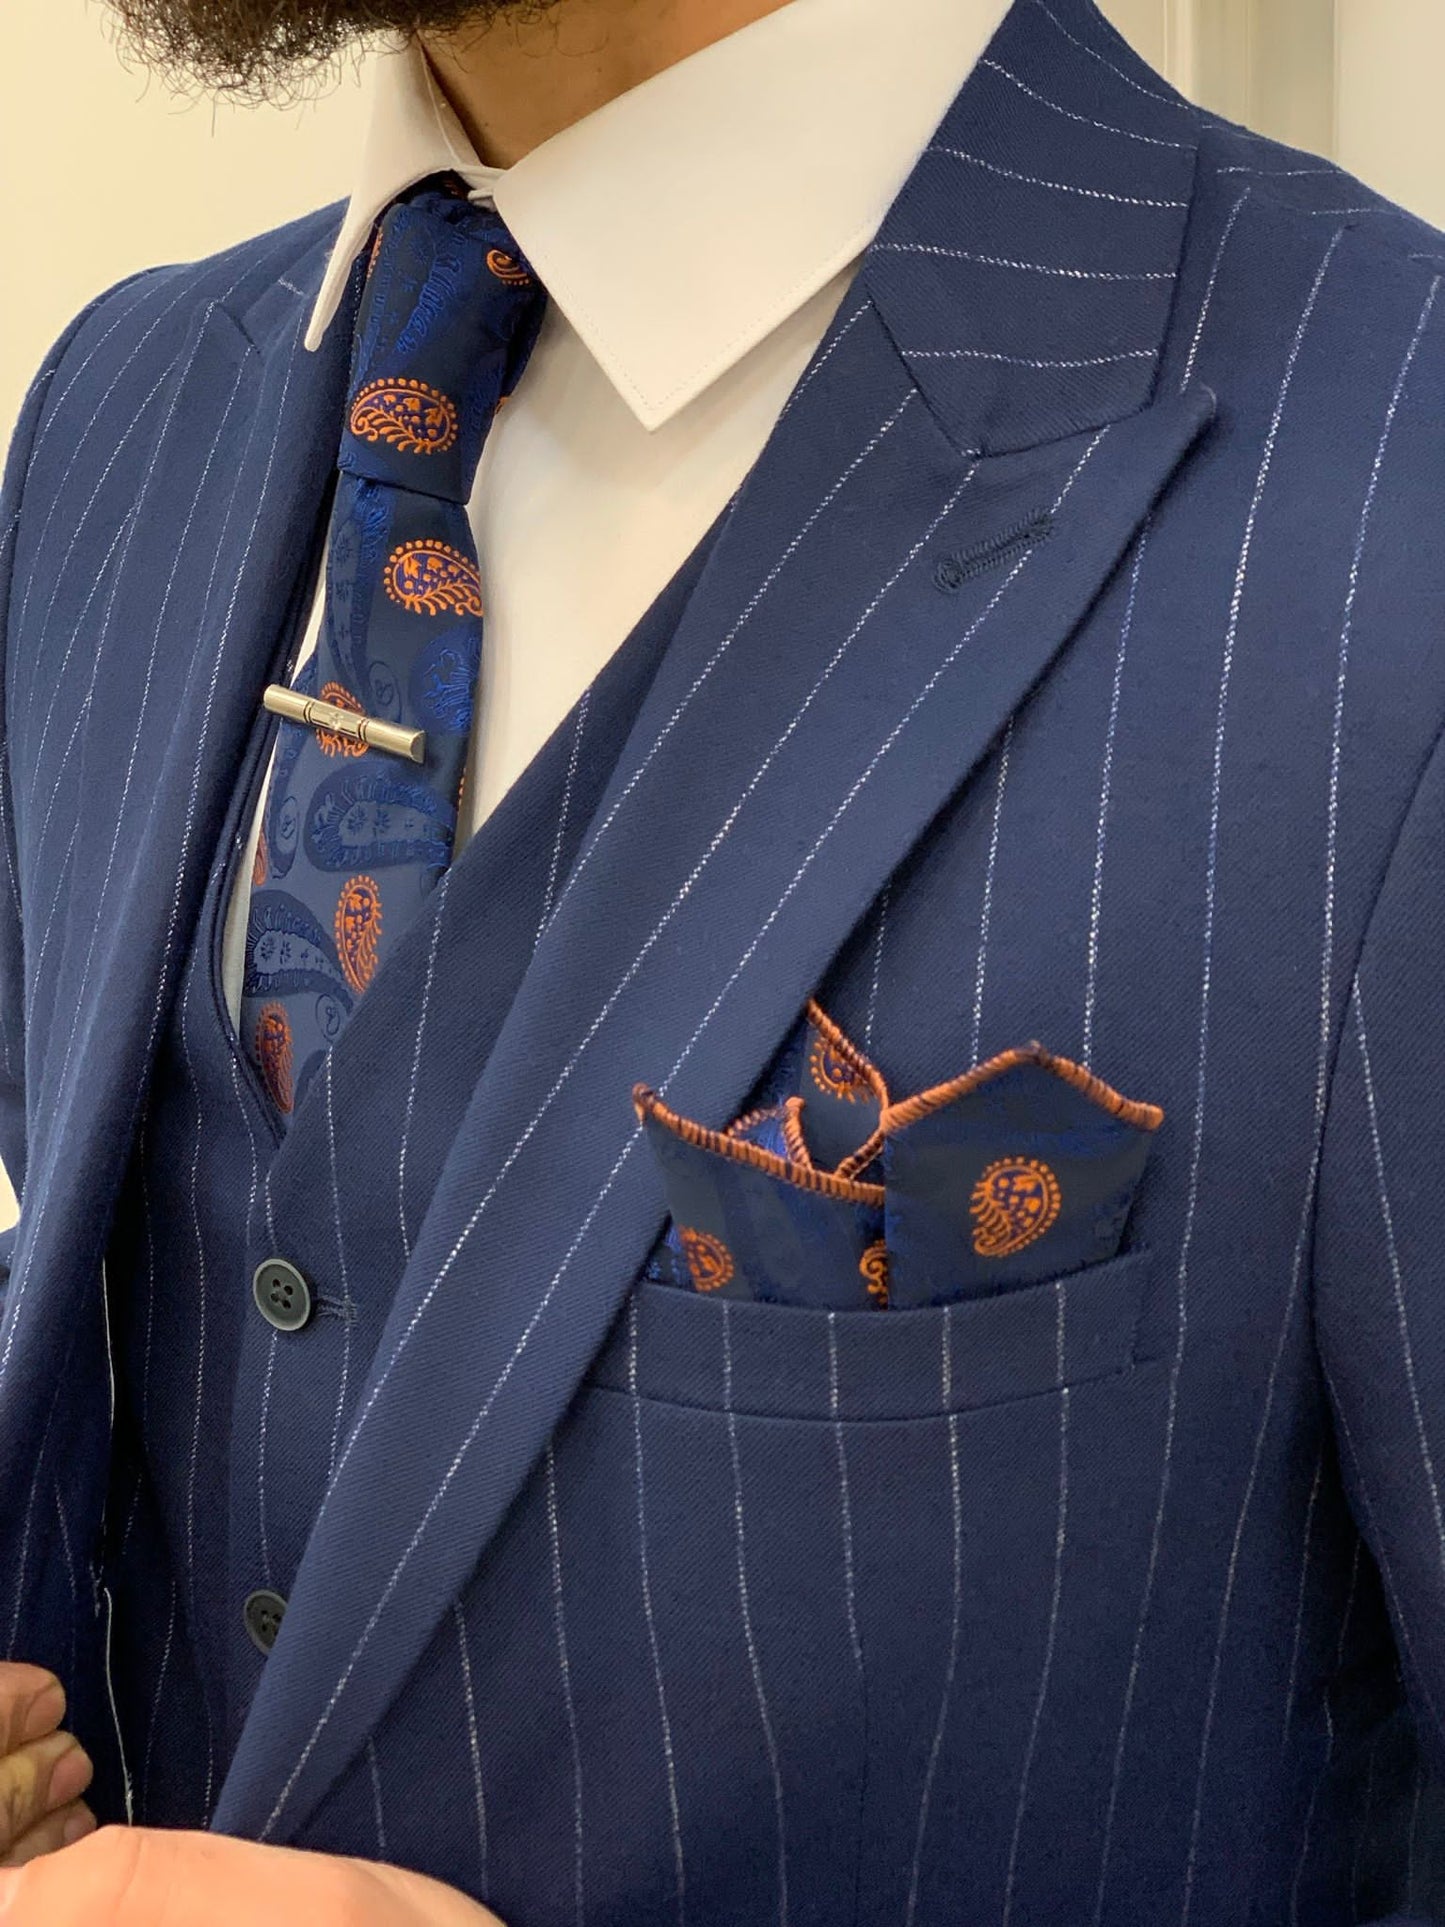 Lagos Blue Slim Fit Peak Lapel Pinstripe Suit